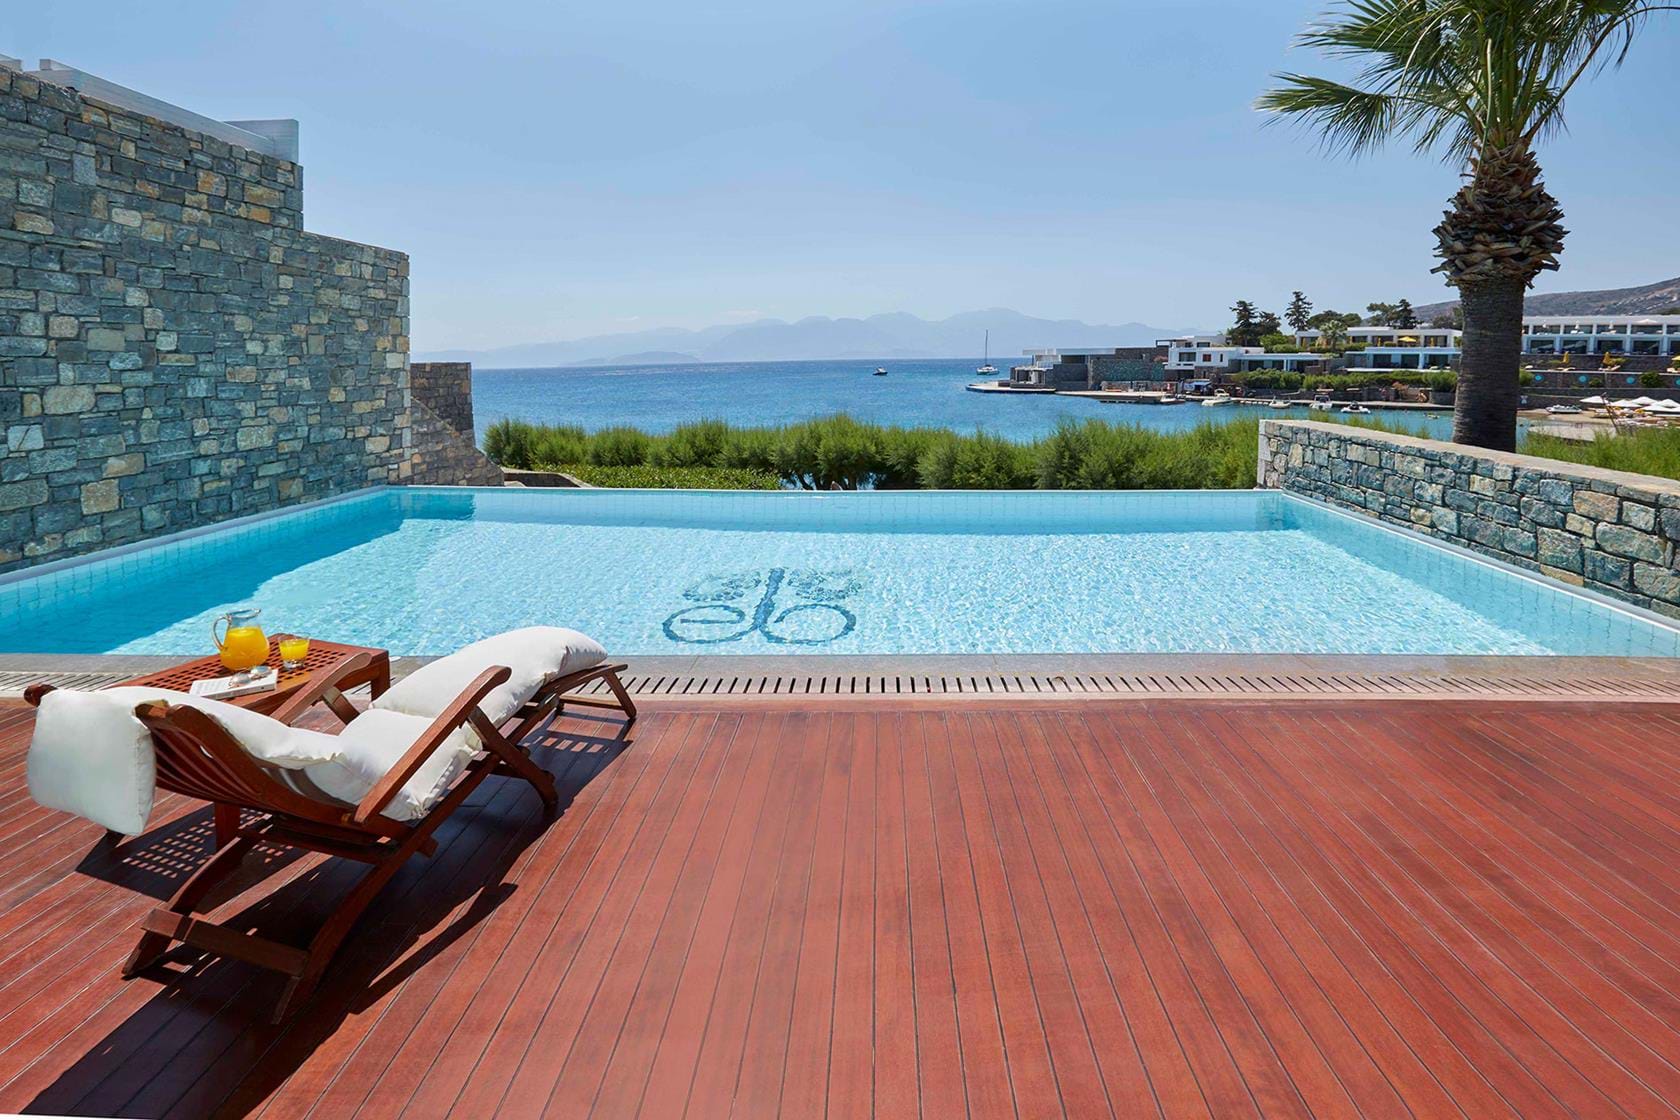 Piscine privée the Mediterranean de l'Hôtel Elounda Bay 5étoiles situé à Elounda proche d'Aghios Nicolaos en Crète